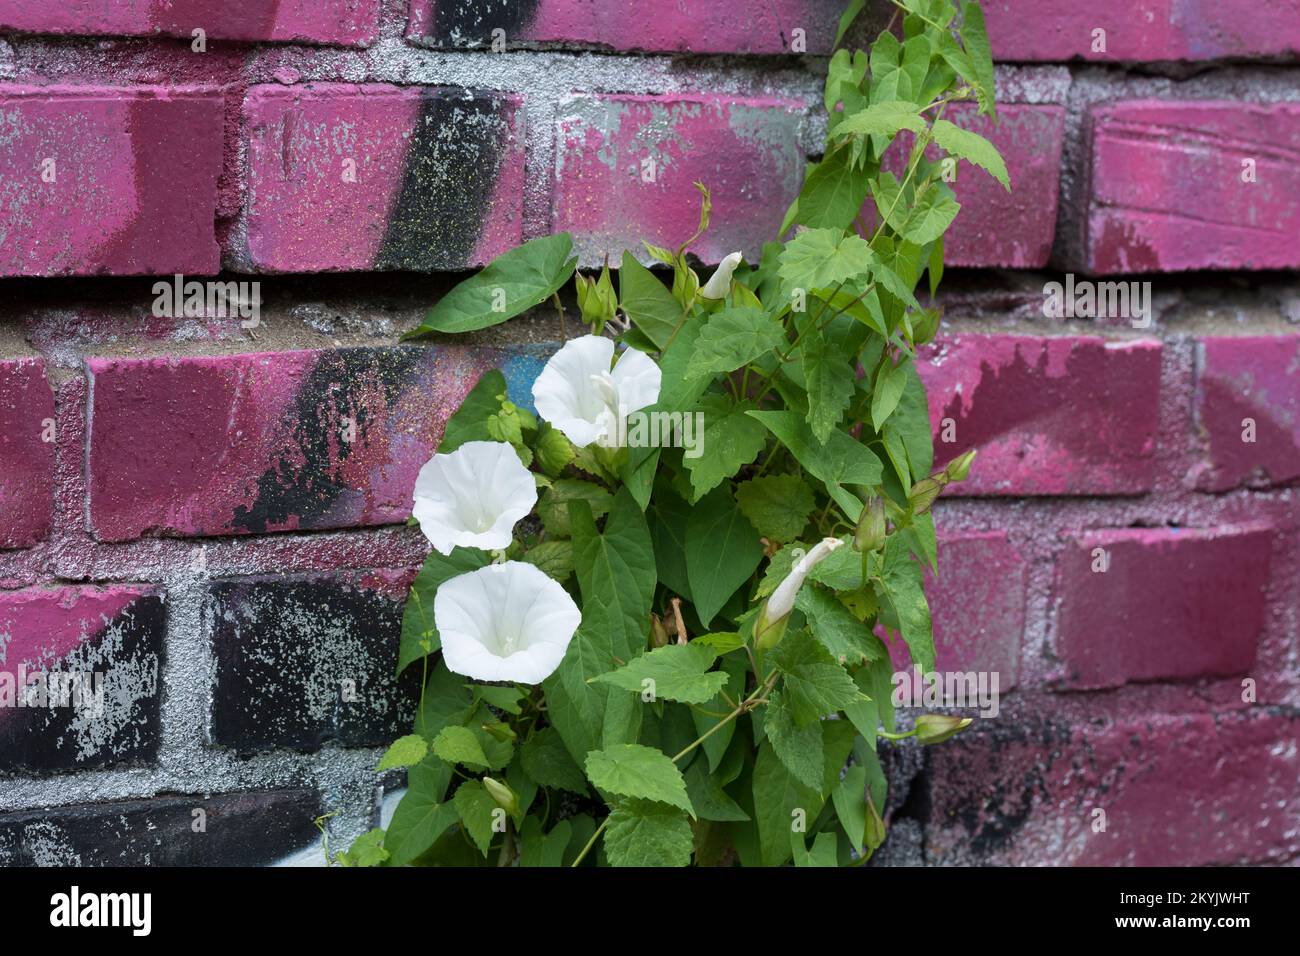 Gewöhnliche Zaunwinde, Echte Zaunwinde, klettert an einer Mauer mit Graffiti empor, Zaun-Winde, Calystegia sepium, hedge bindweed, Bindweed, Rutland b Stock Photo